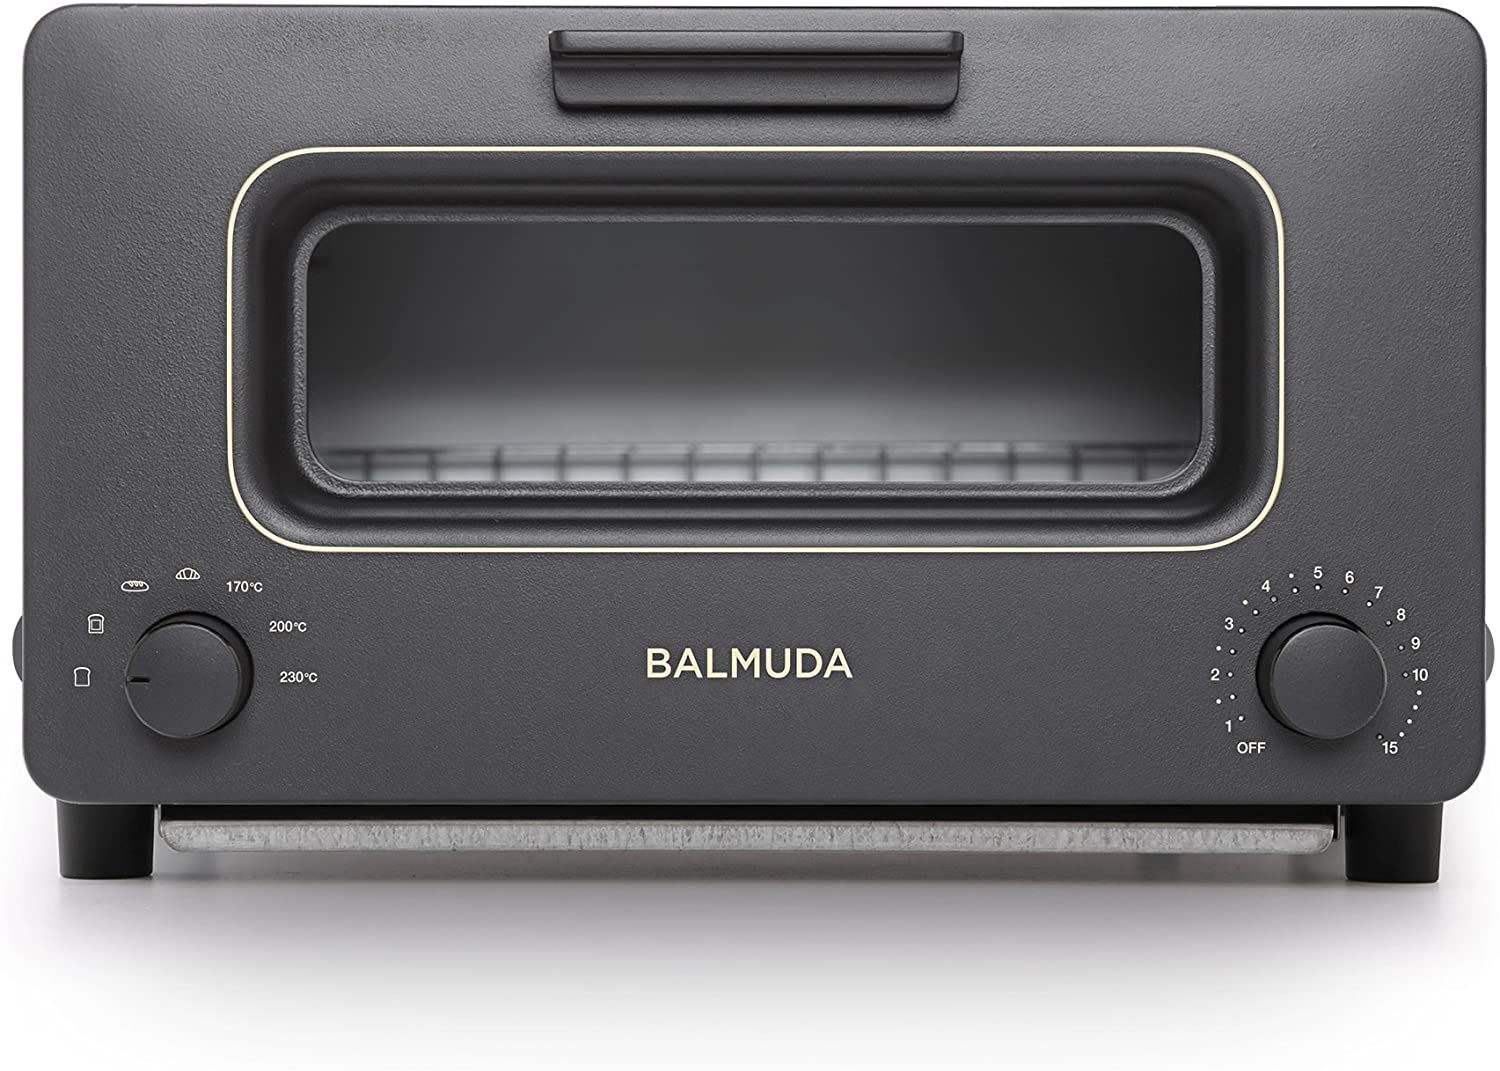  【バルミューダ】スチームオーブントースター BALMUDA The Toaster(ブラック)